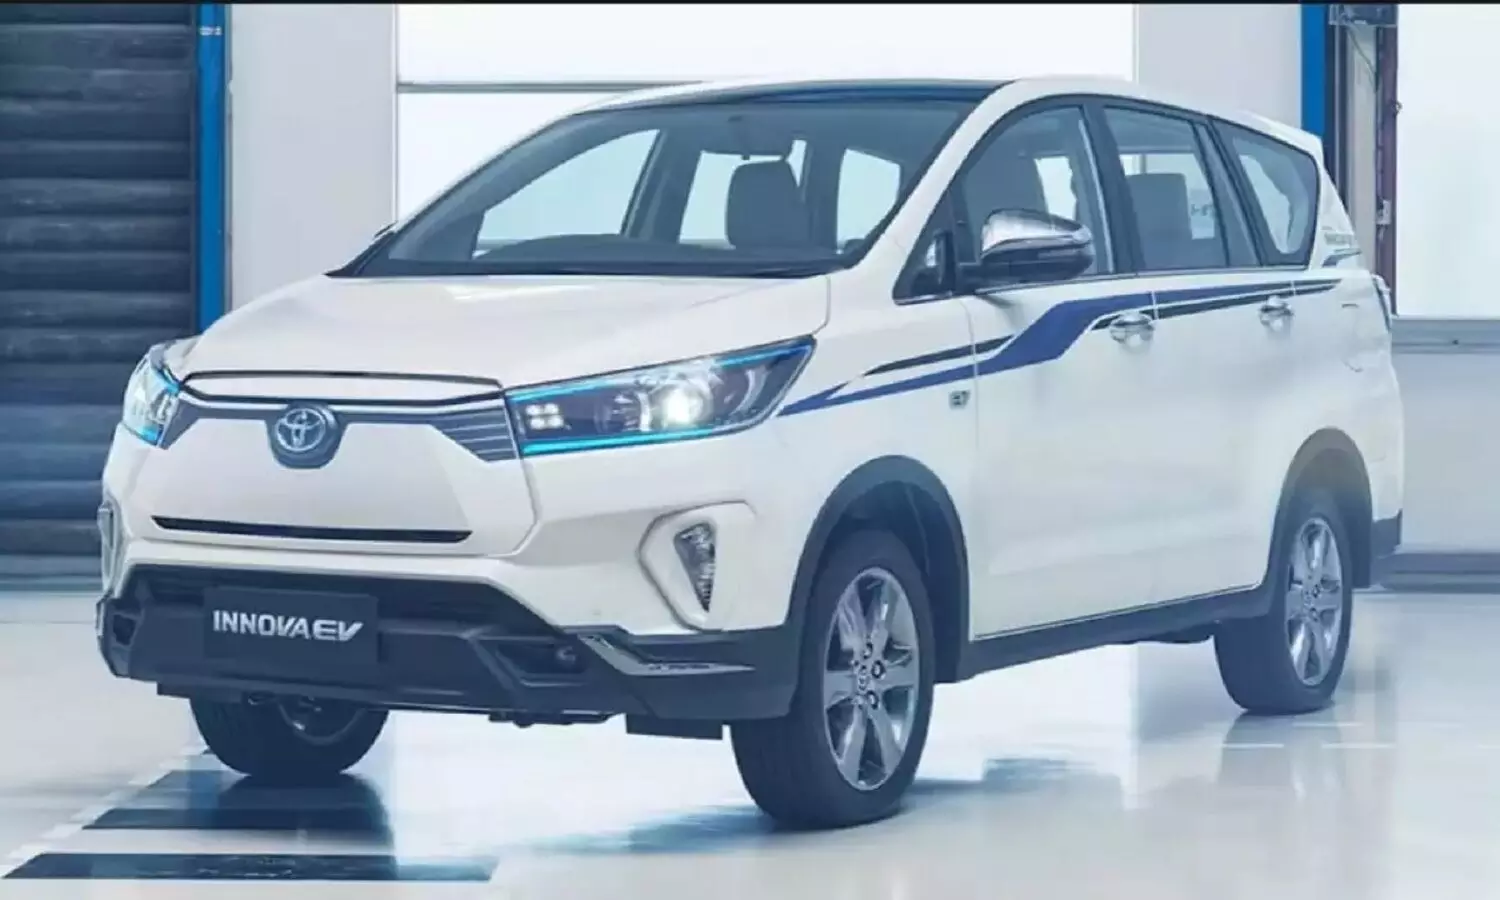 Toyota Innova EV: इलेक्ट्रिक अवतार में लांच होगी यह 7 सीटर कार, जानें डिटेल्स